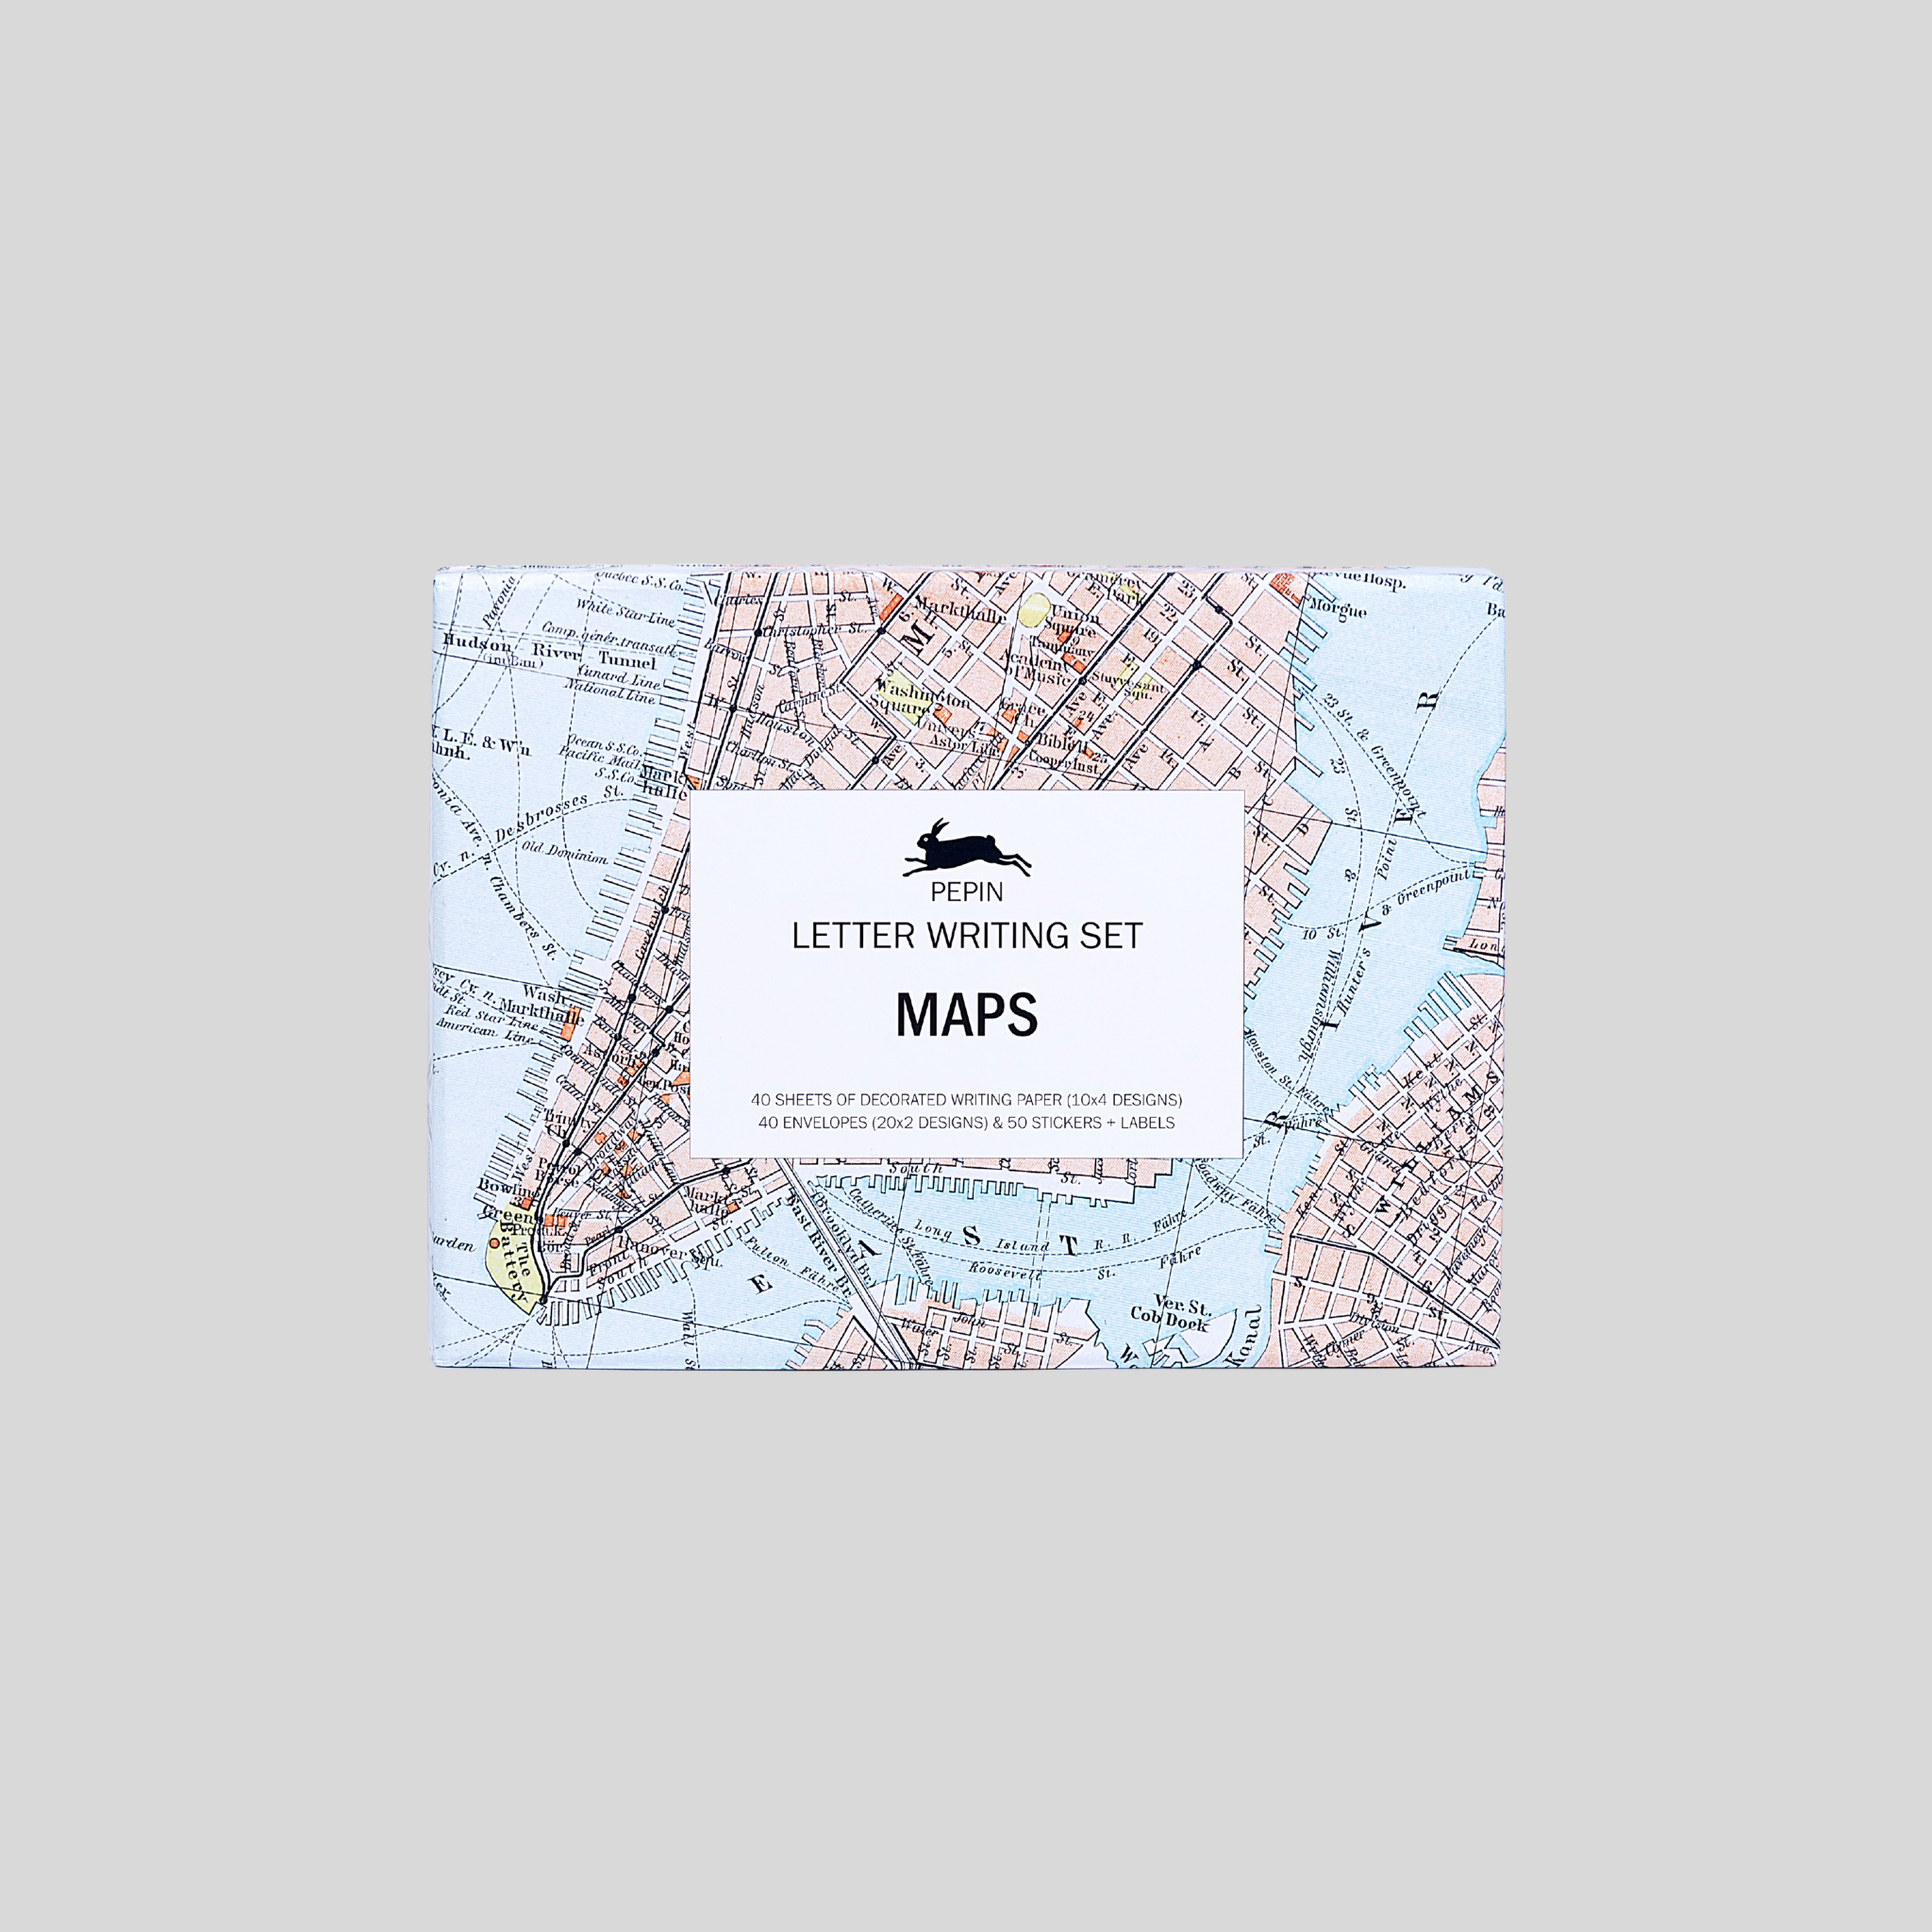 Pepin Letter Writing Set Maps